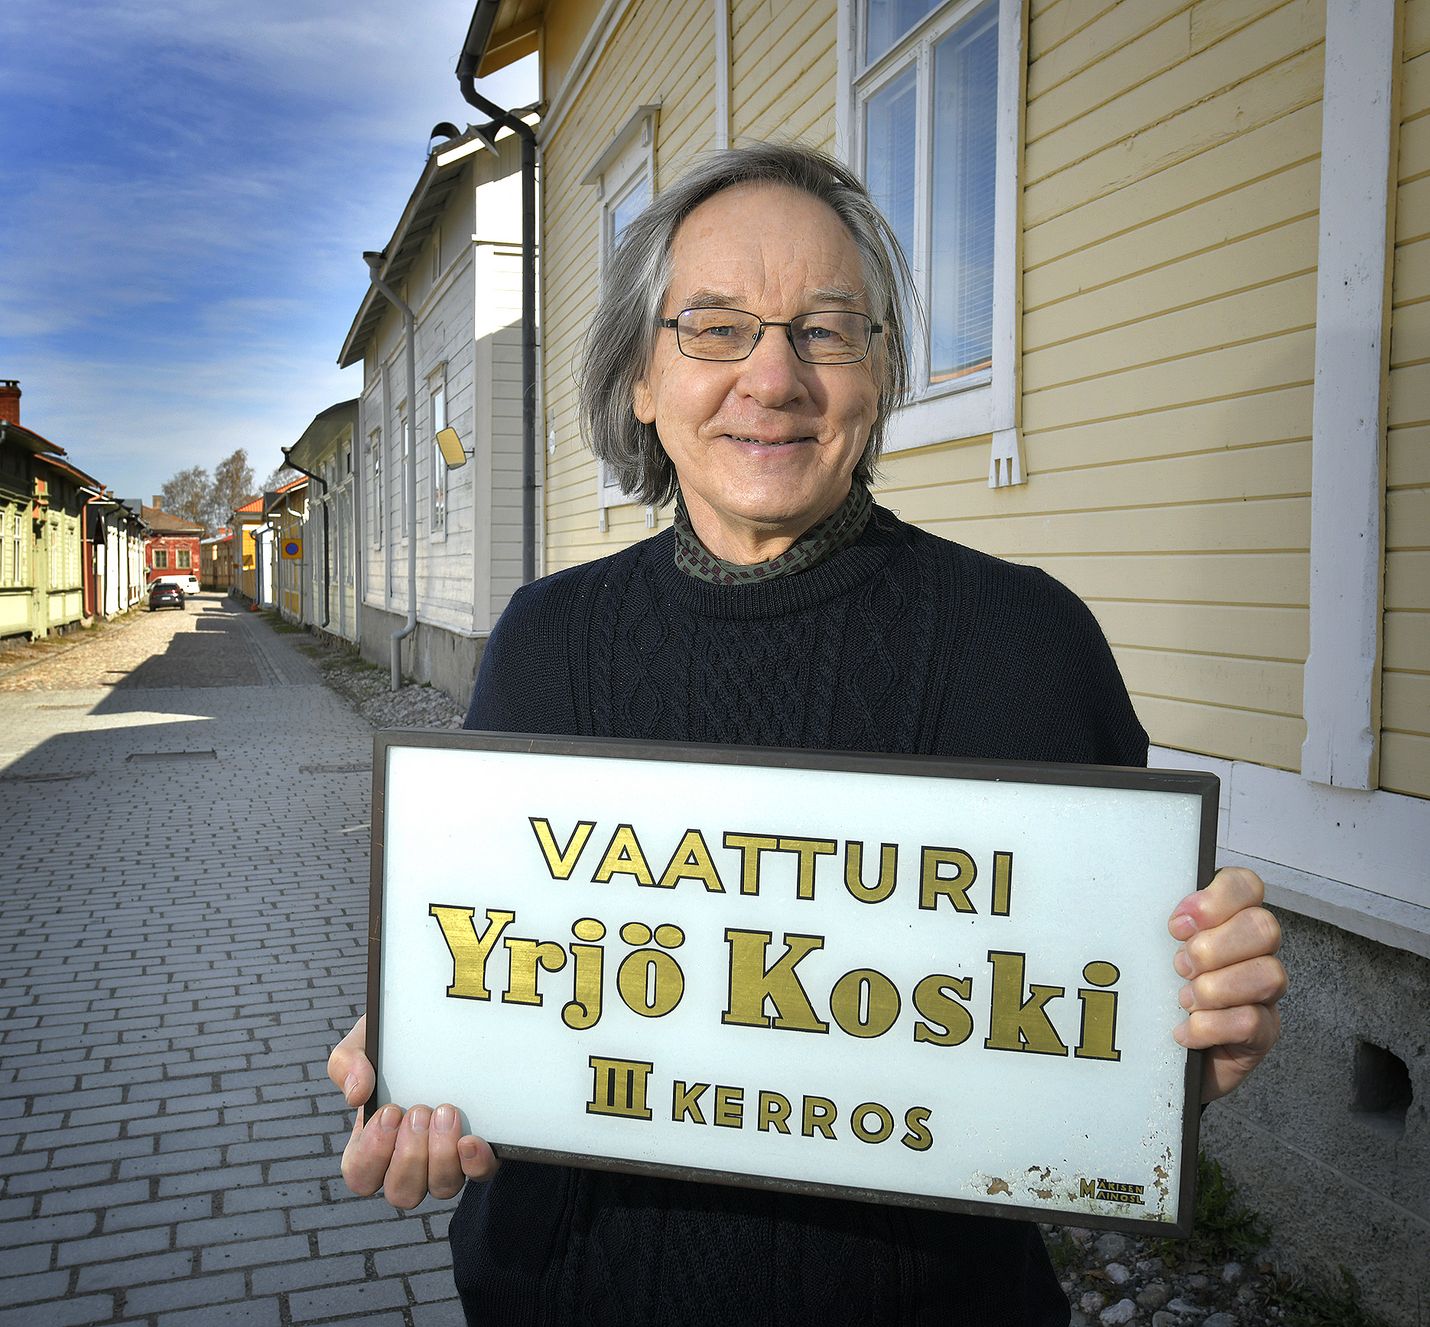 Rauman taidemuseon eläkkeellä oleva intendentti Janne Koski palaa kotikaupunkiinsa Turkuun ja vieläpä samaan taloon, jossa isoisä Yrjö Koski piti vaatturiliikettä.